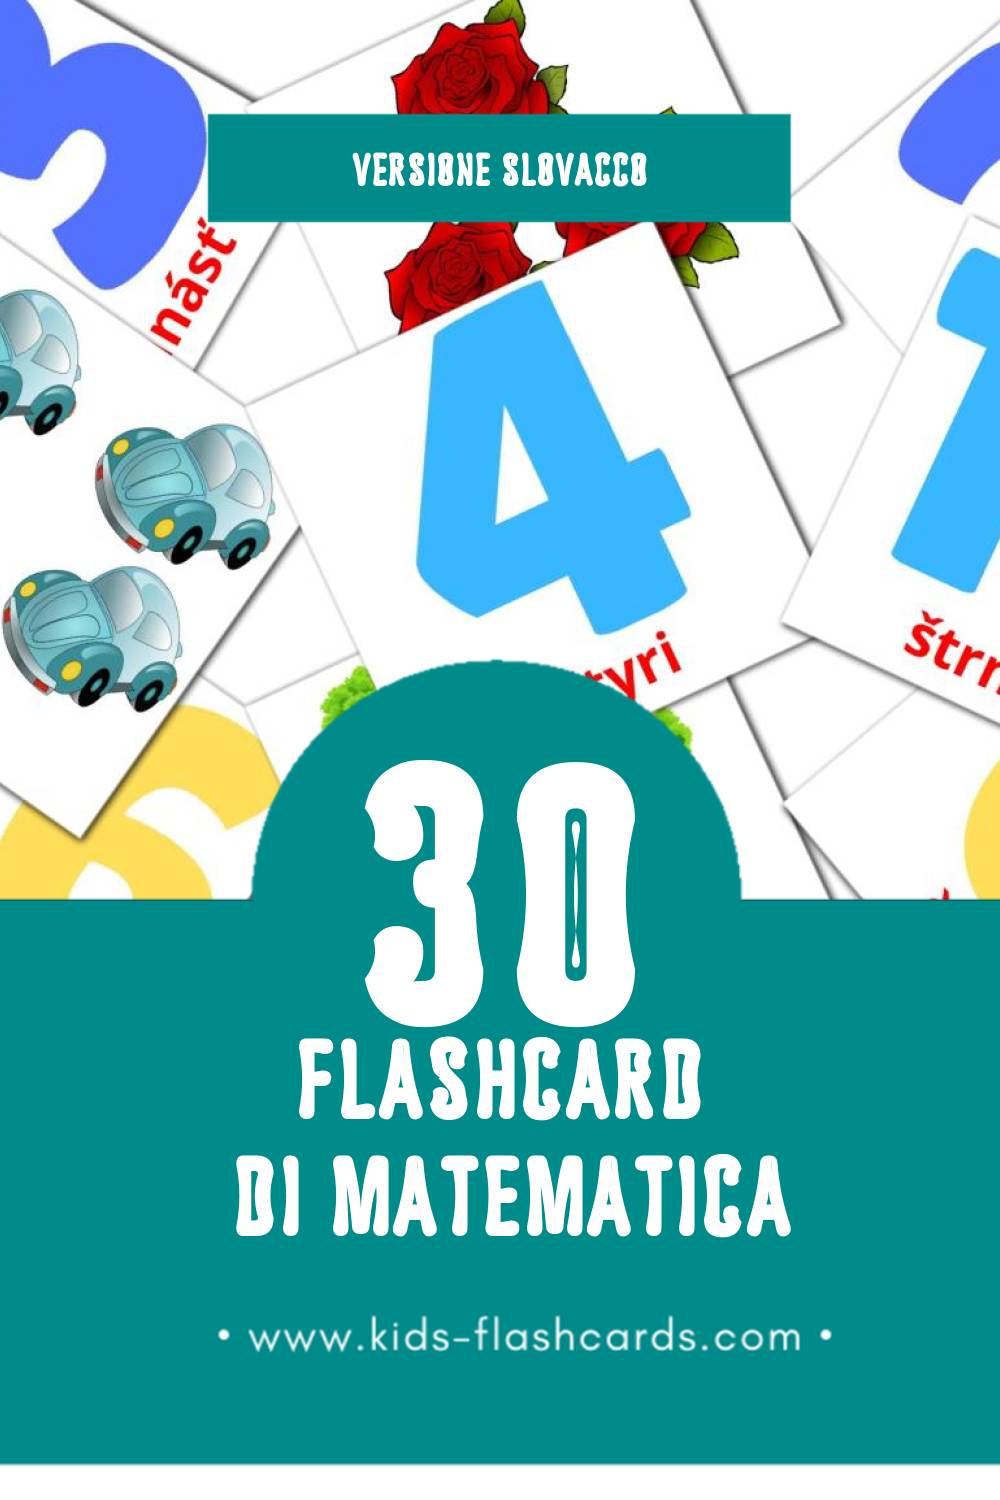 Schede visive sugli Matematika per bambini (30 schede in Slovacco)